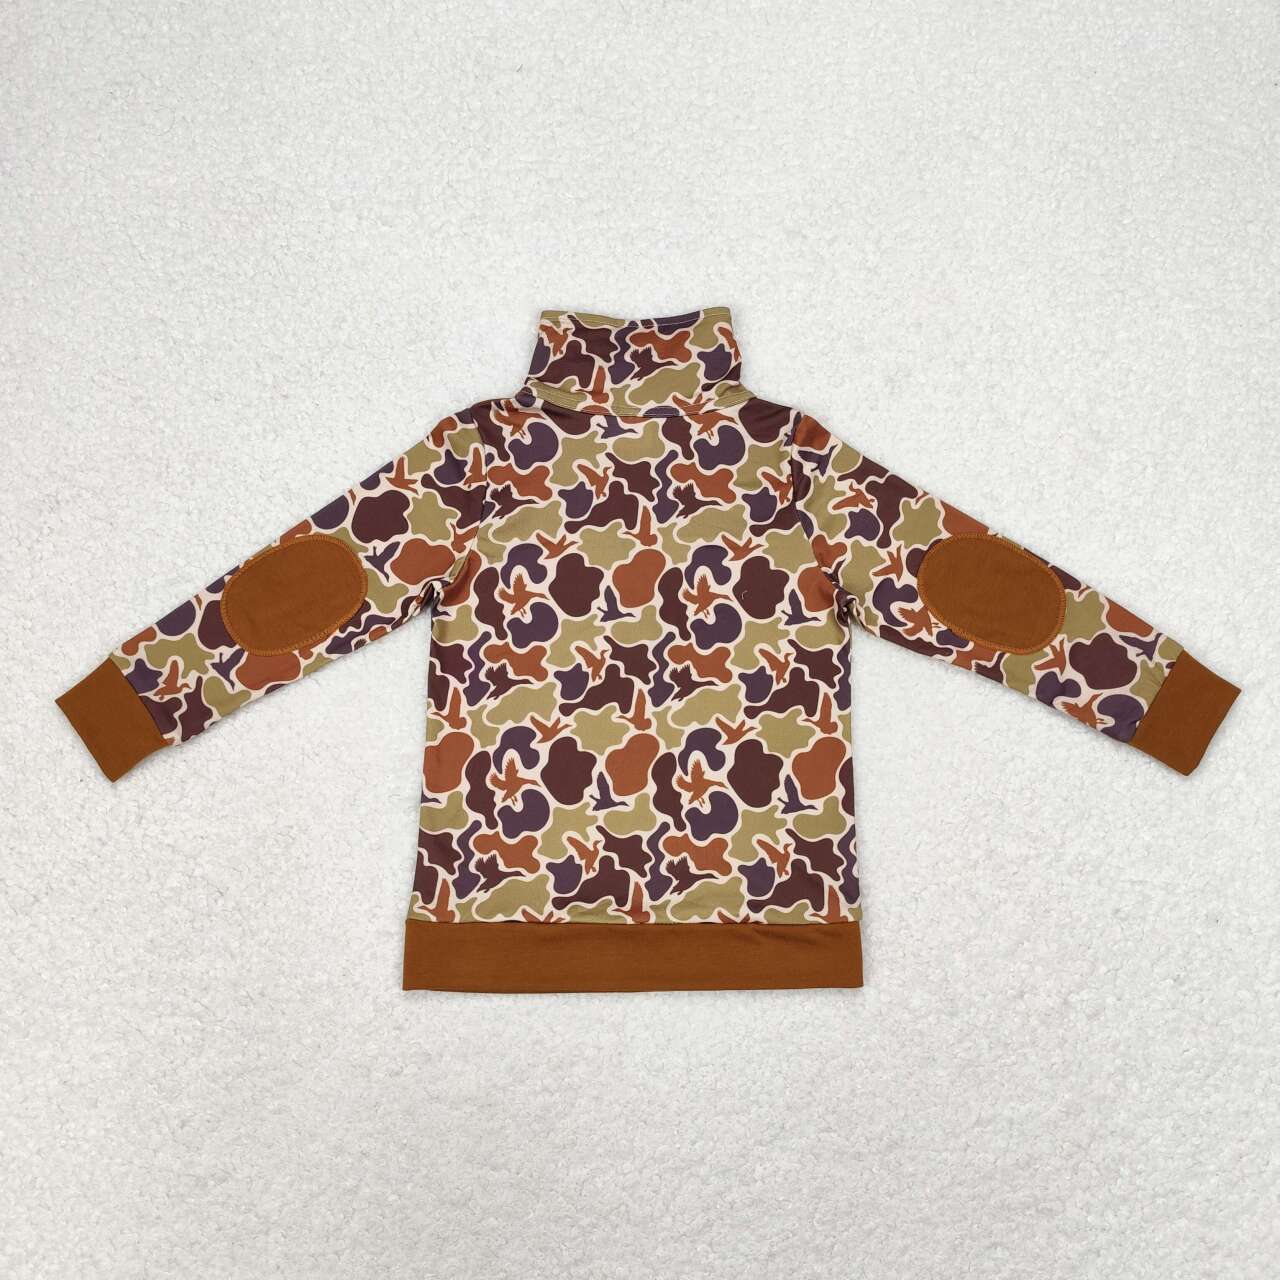 BT0712 Brown Camo Duck Print Boys Pullover Zipper Tee Shirts Top